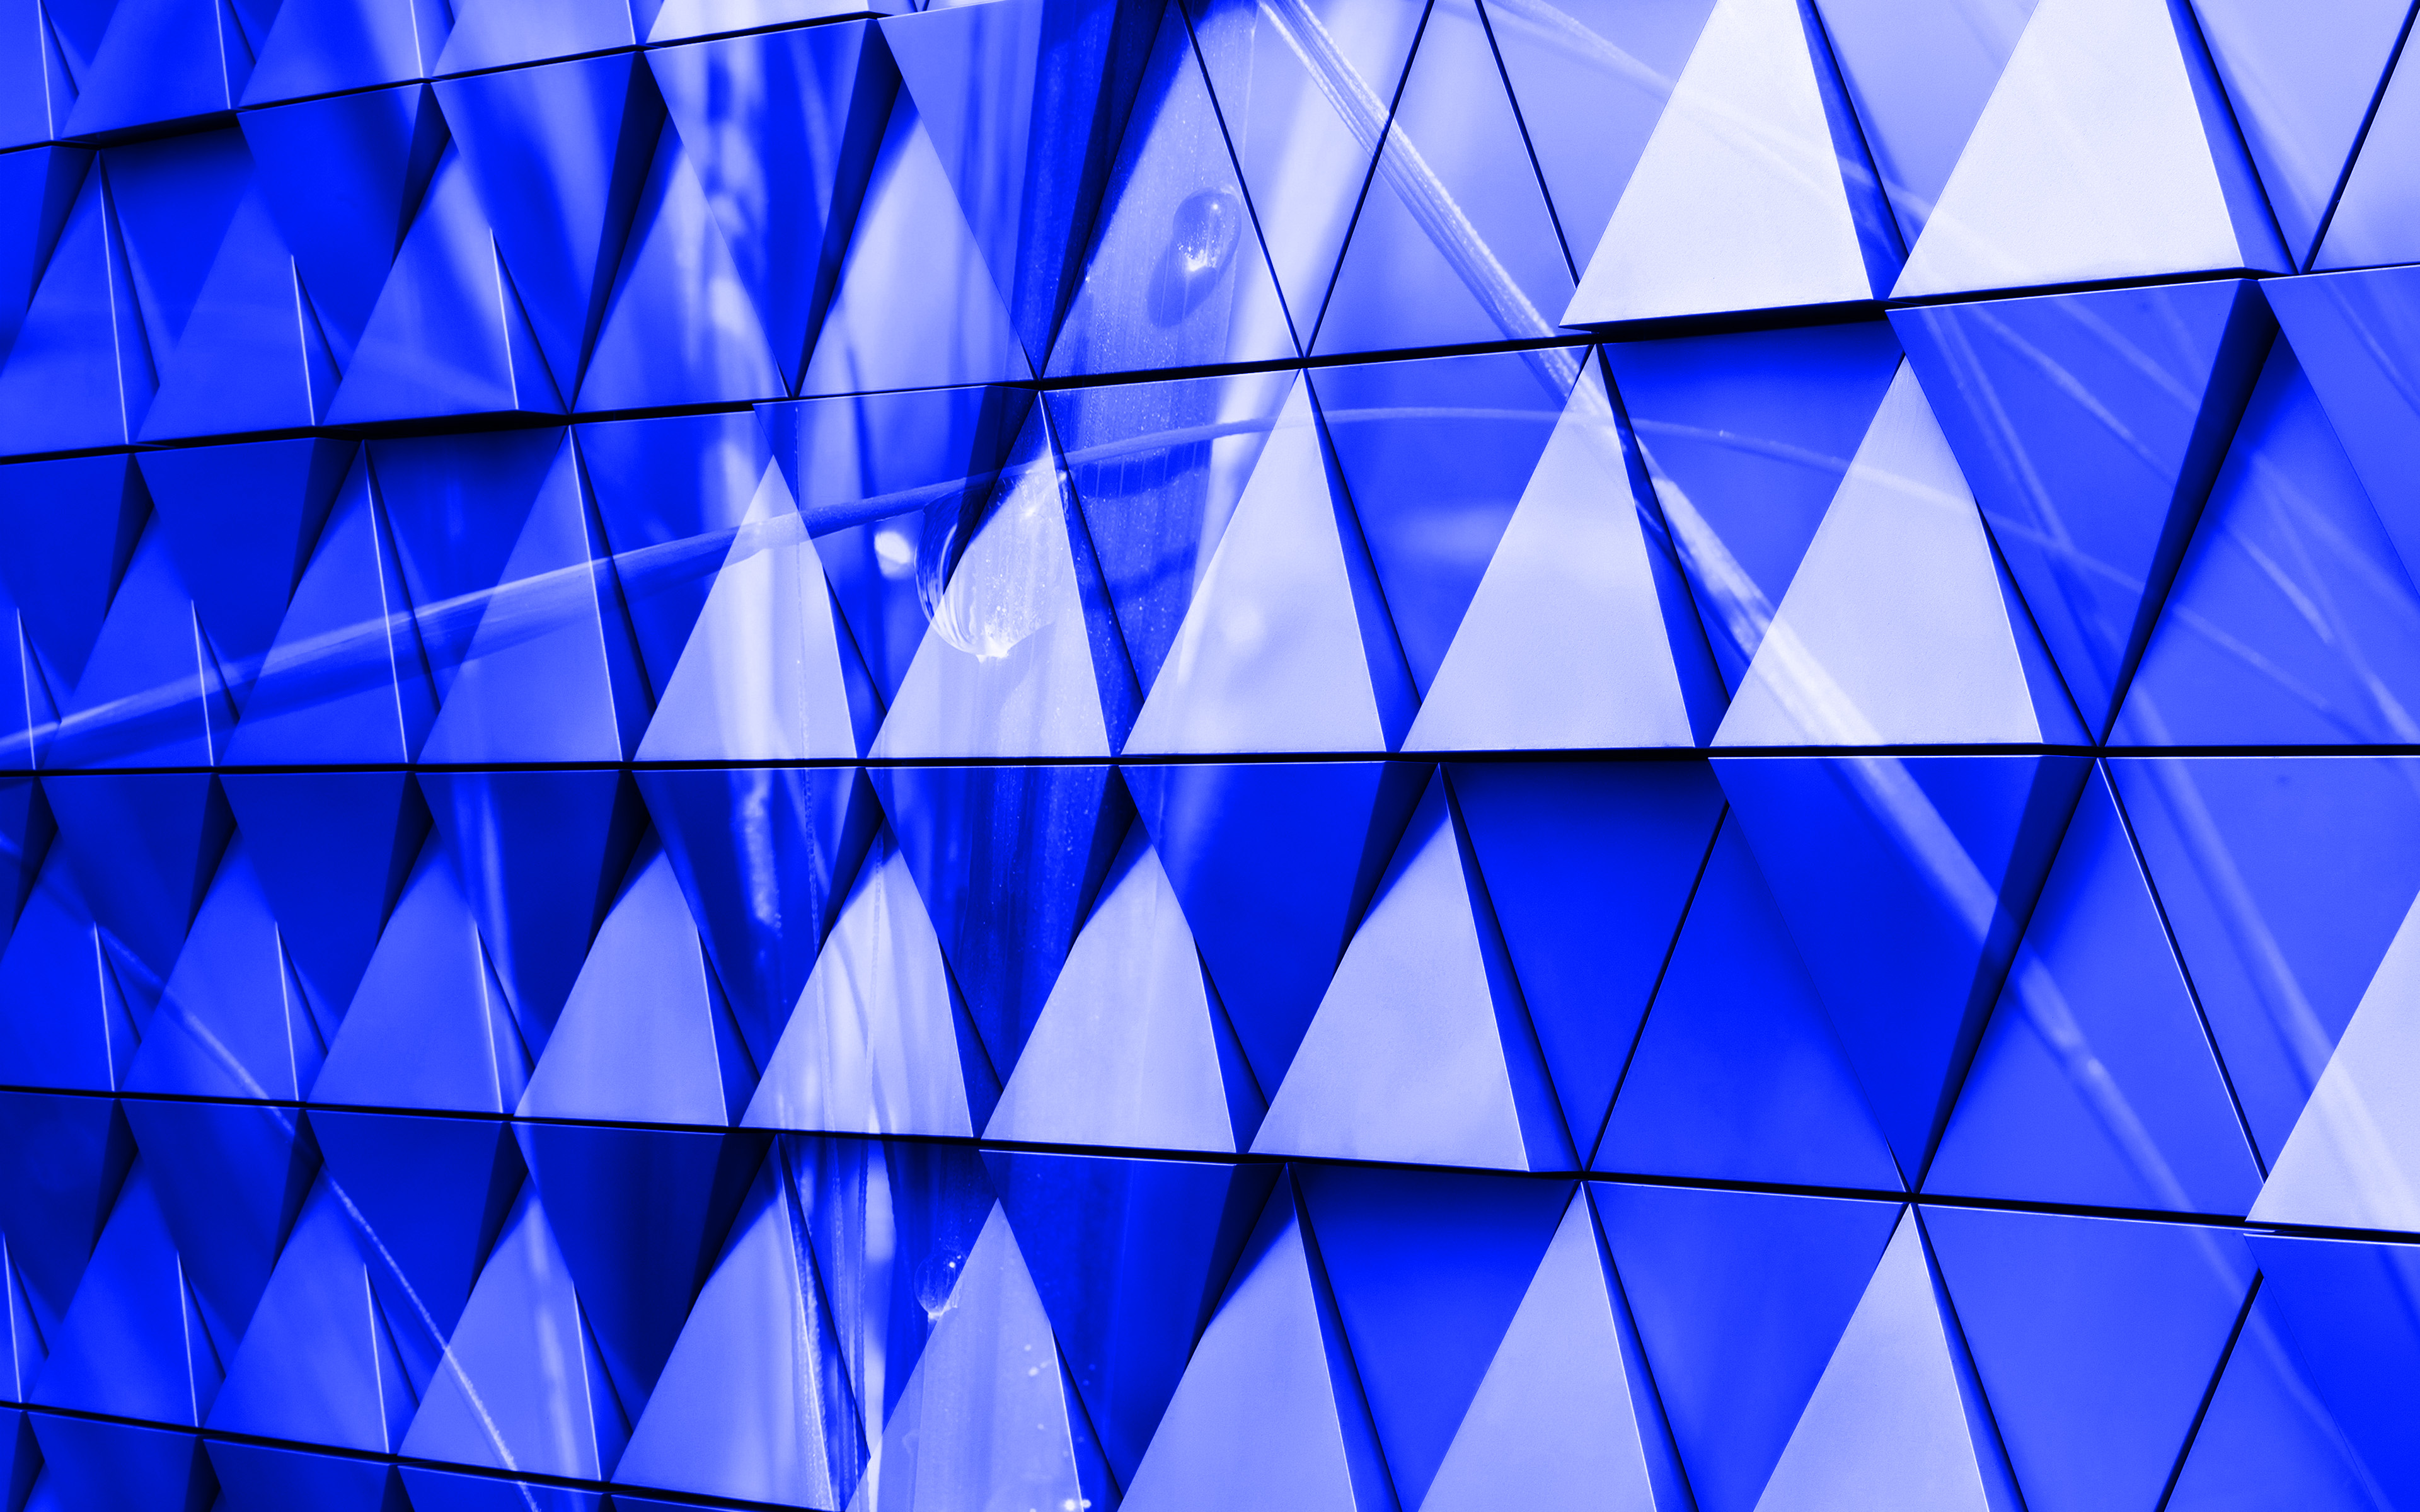 المثلث الأزرق 3d الخلفية, 4 ك, الأزرق 3d الخلفية, مثلثات زجاجية, جميل 3D خلفية زرقاء, مثلثات الزجاج الأزرق 3d